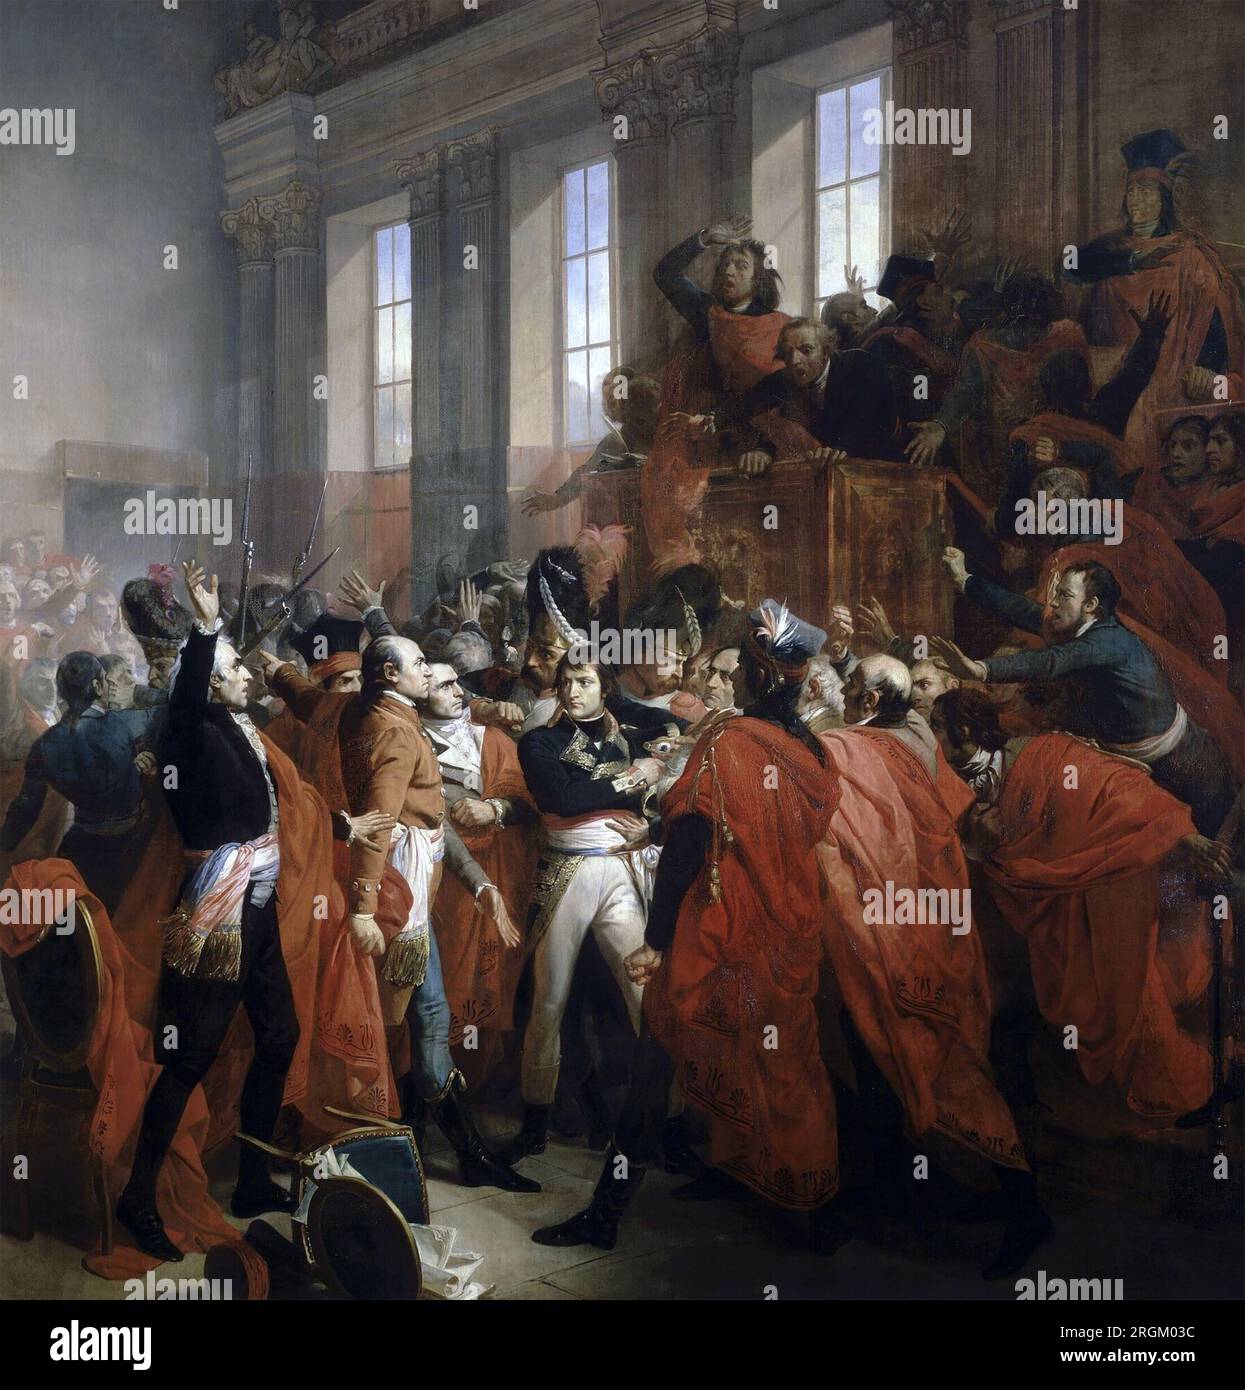 NAPOLEON BONAPARTE (1769-1821) Mitglieder des Rates der 500 umzingeln General Bonaparte während des Putsches von 18 Brumaire (9. November 1799), der zum ersten Konsul Frankreichs wurde. Gemälde von Francois Bouchot Stockfoto